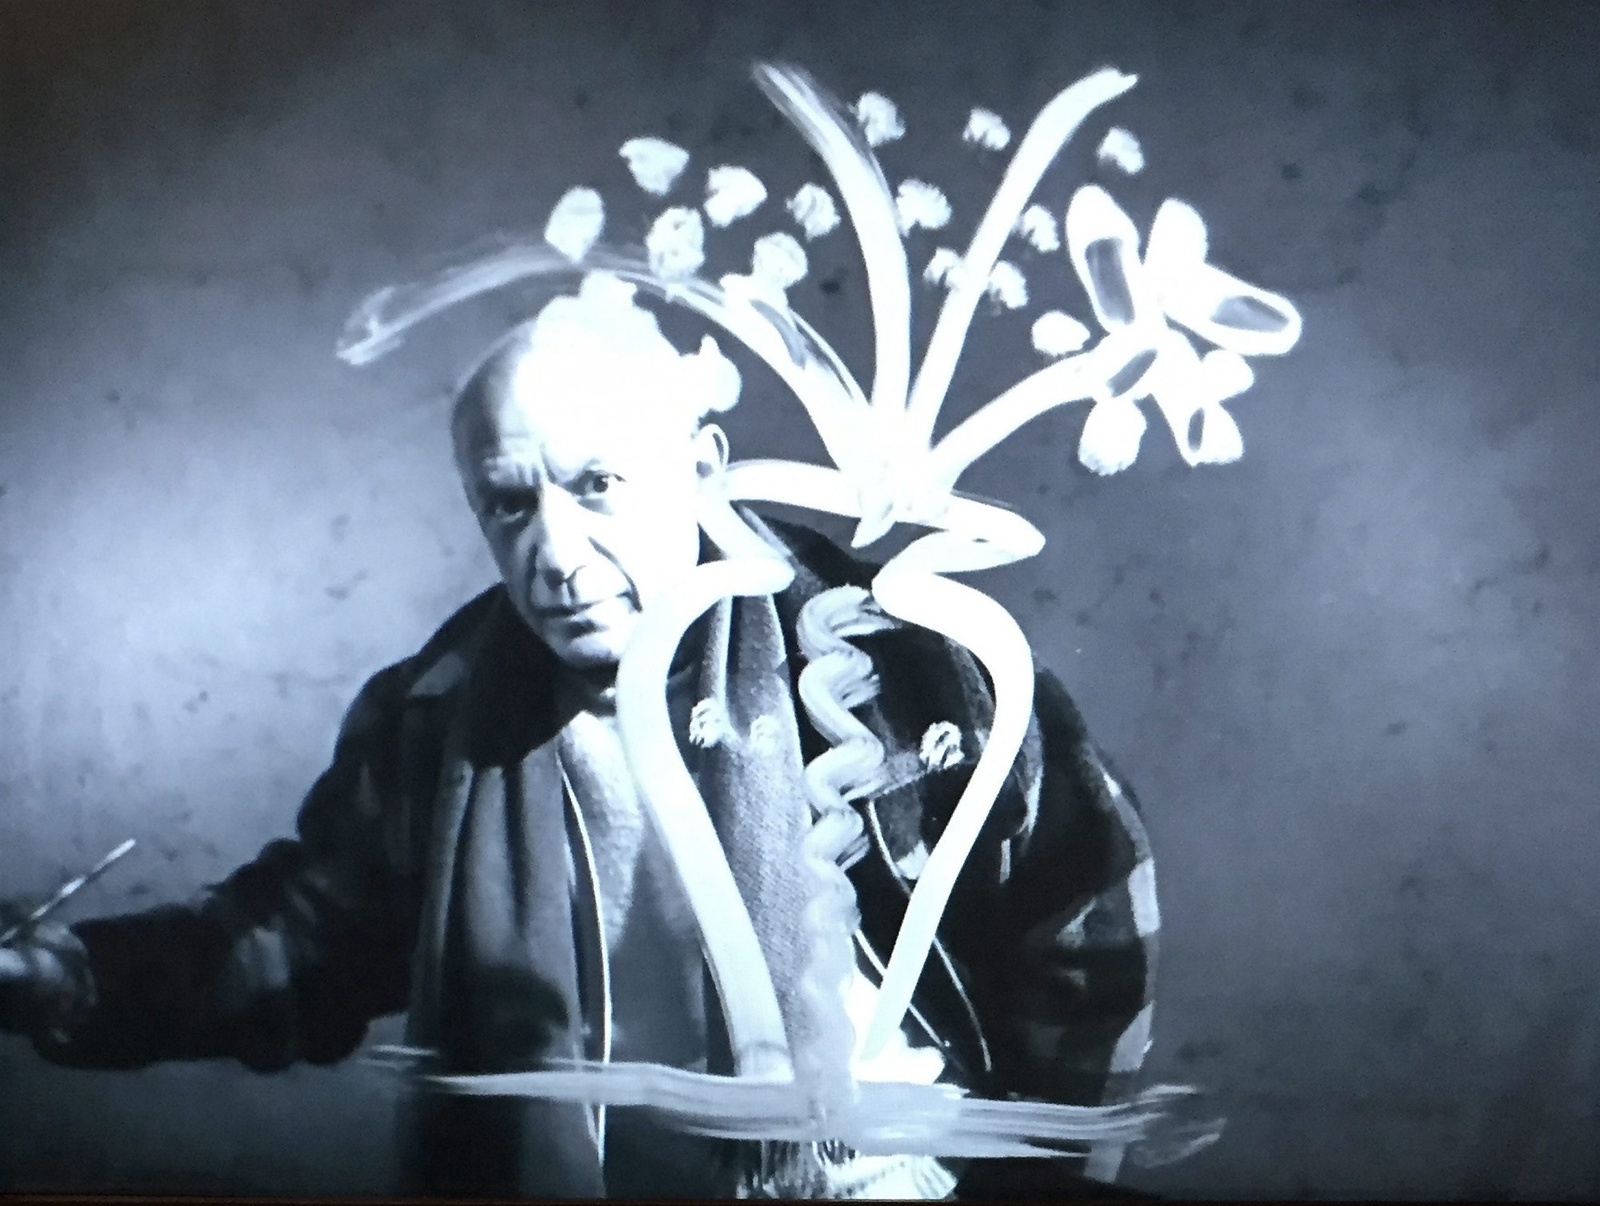 Picasso i aktion. Stillbild ur Paul Haesaerts Visite à Picasso, 1949. Foto: Bilder från utställningen